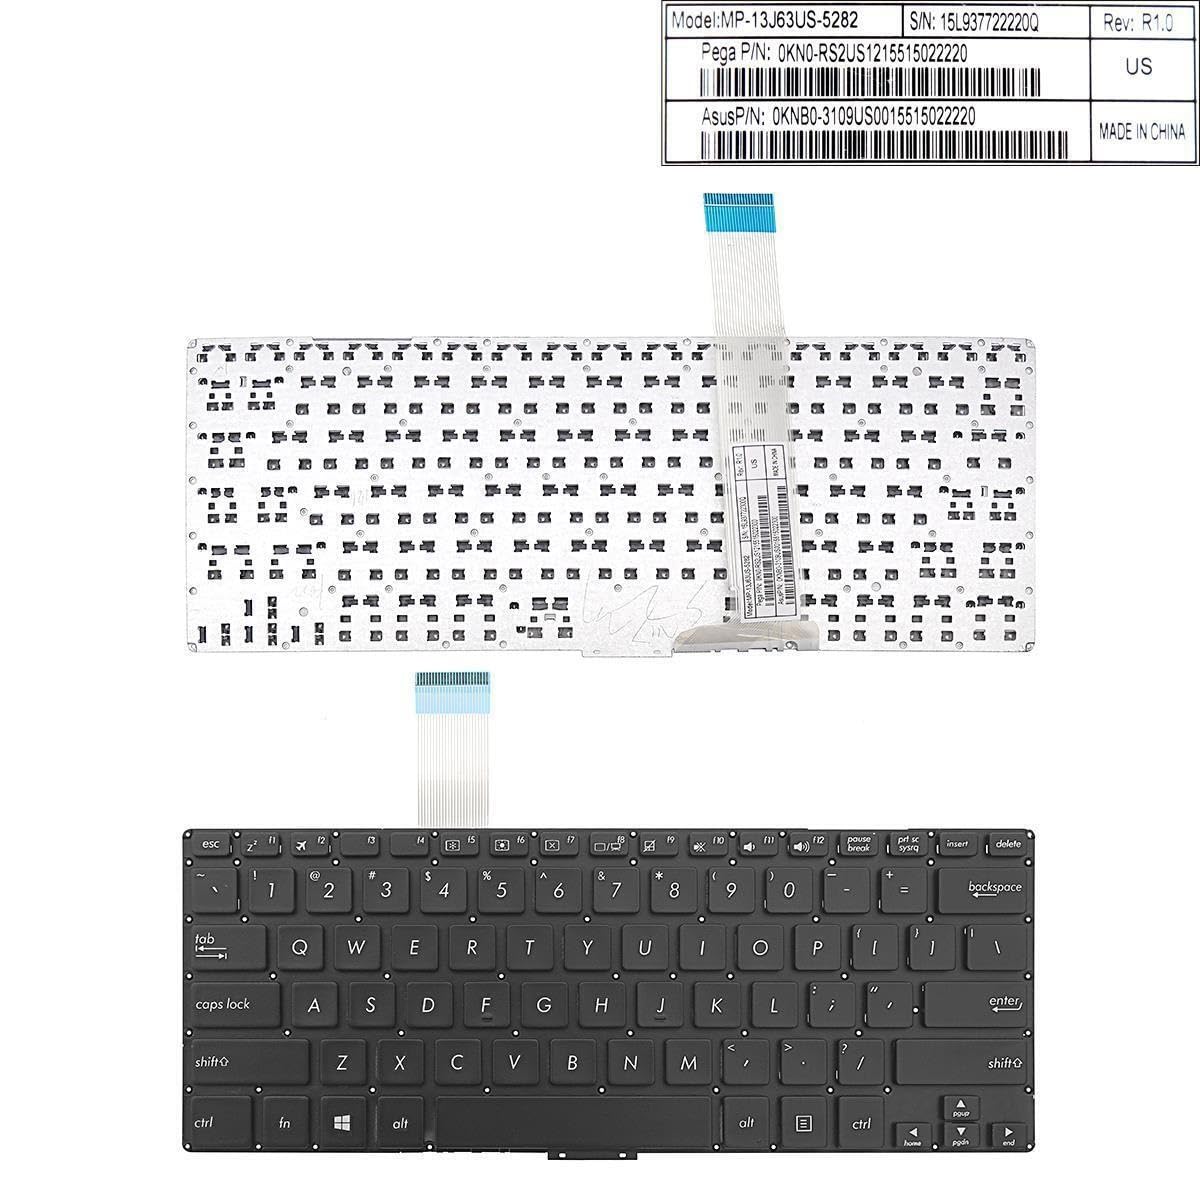 WISTAR Laptop Keyboard Compatible for ASUS VivoBook S300 S300C S300SC S300CA S300K S300KI Series